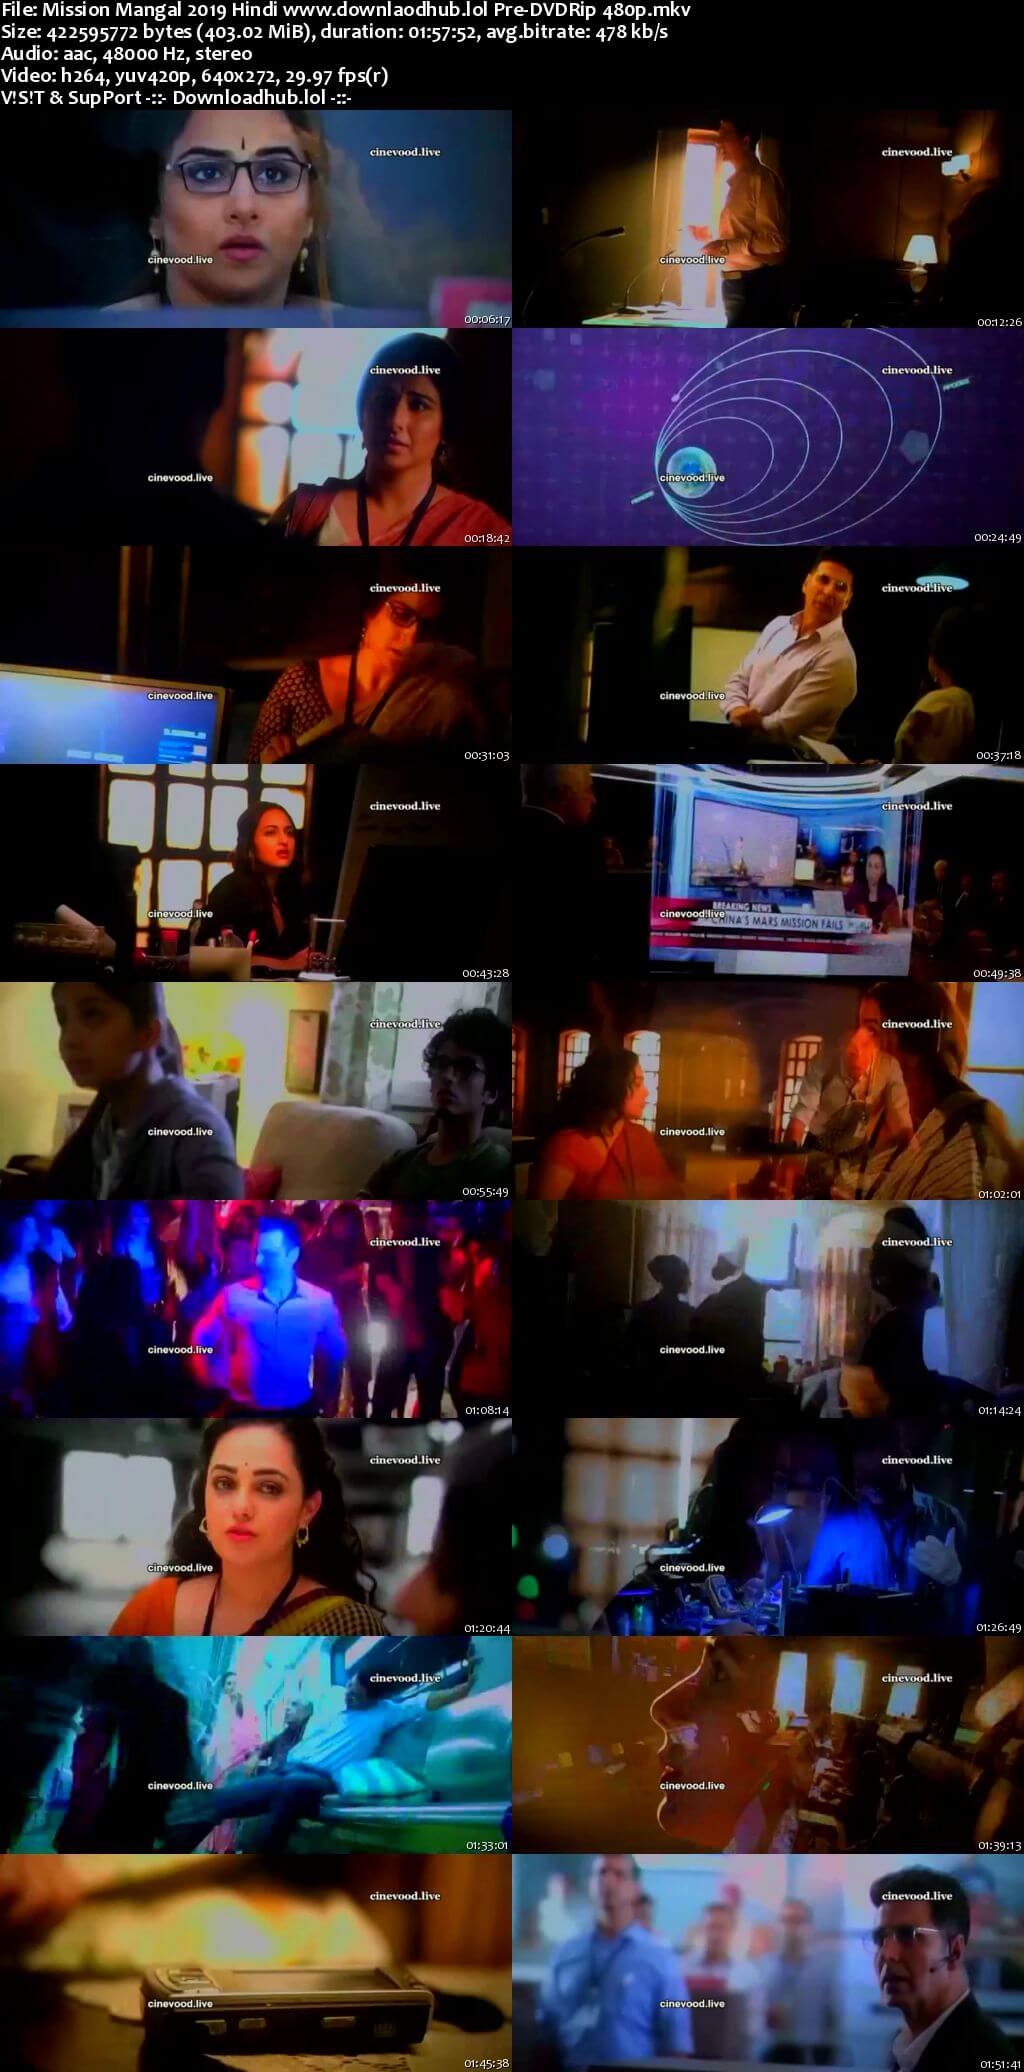 Mission Mangal 2019 Hindi 400MB Pre-DVDRip 480p